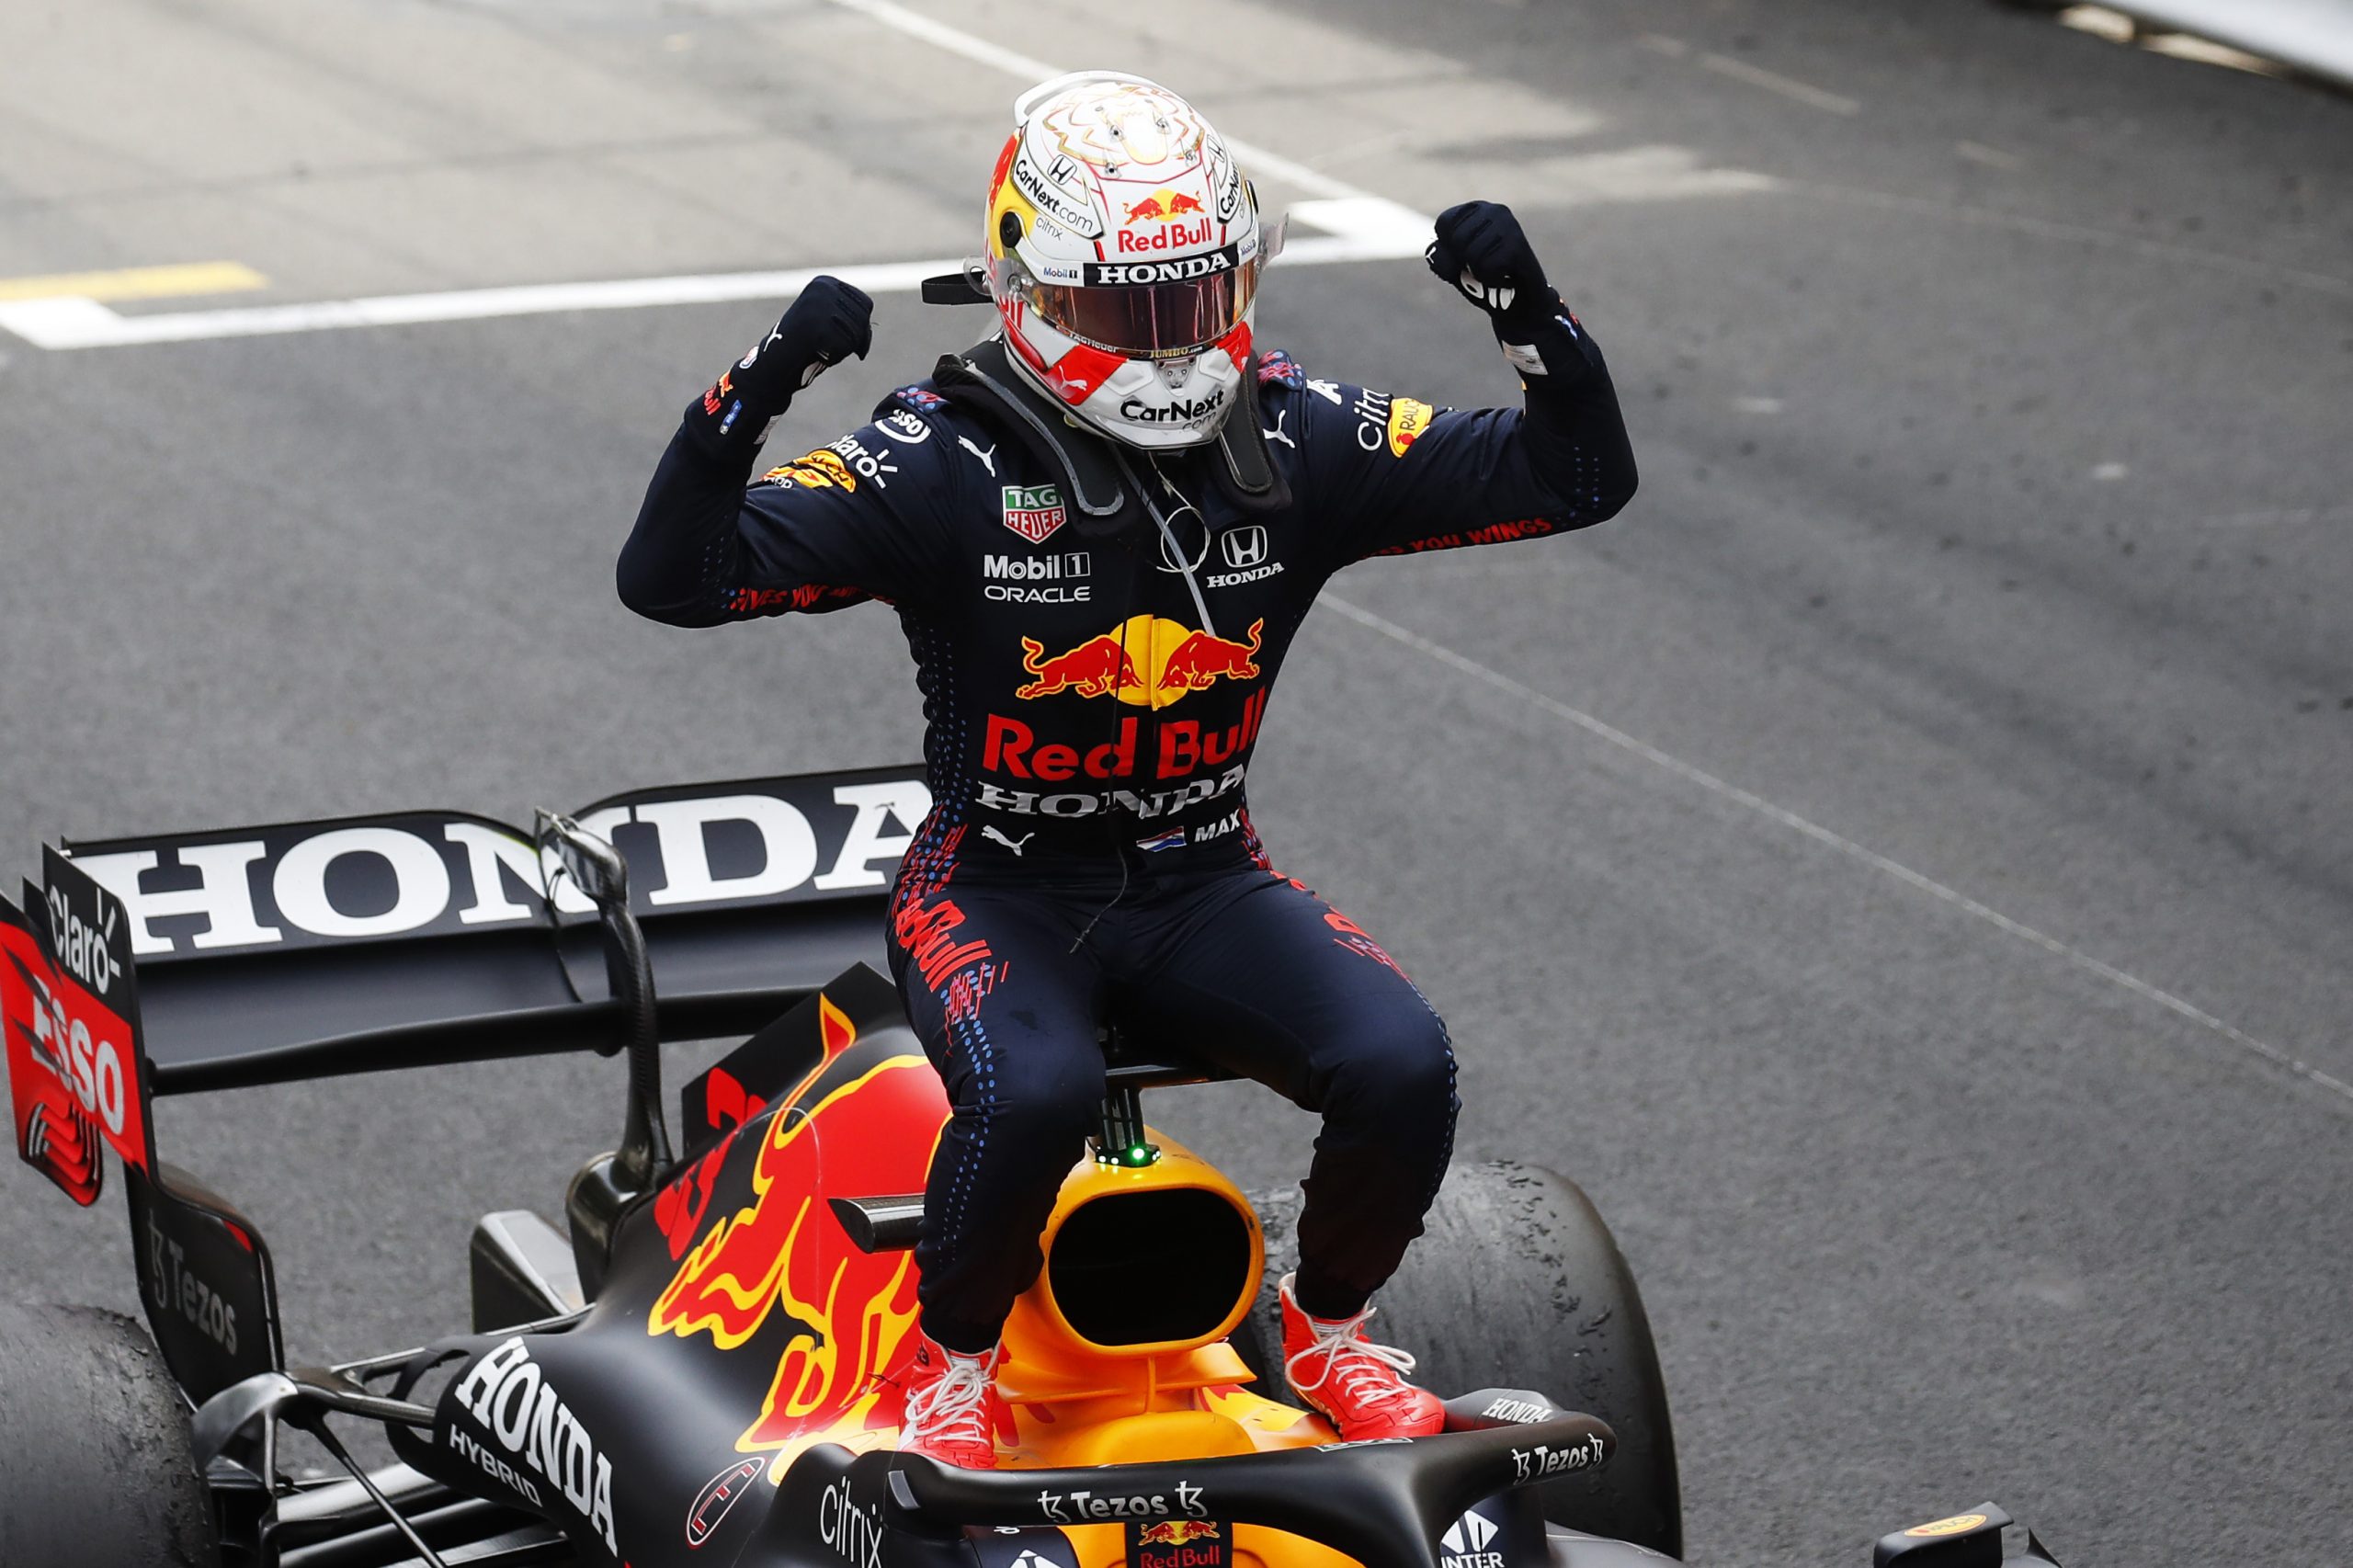 Formuła 1: Max Verstappen wygrał Grand Prix Monako i został liderem klasyfikacji generalnej!